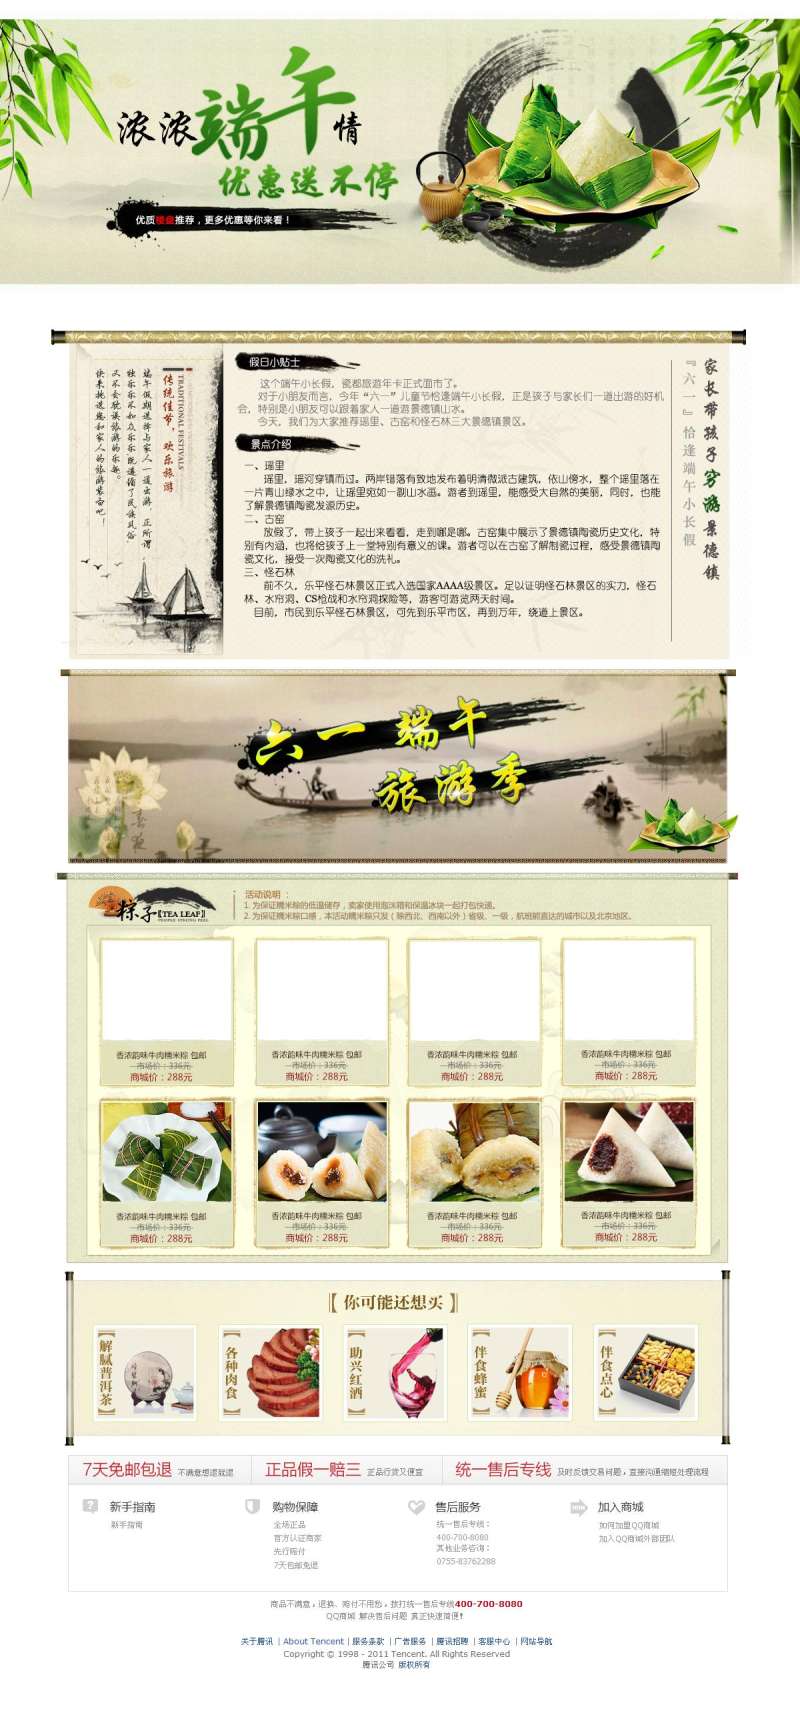 中国风的端午节淘宝专题页面模板psd分层素材下载